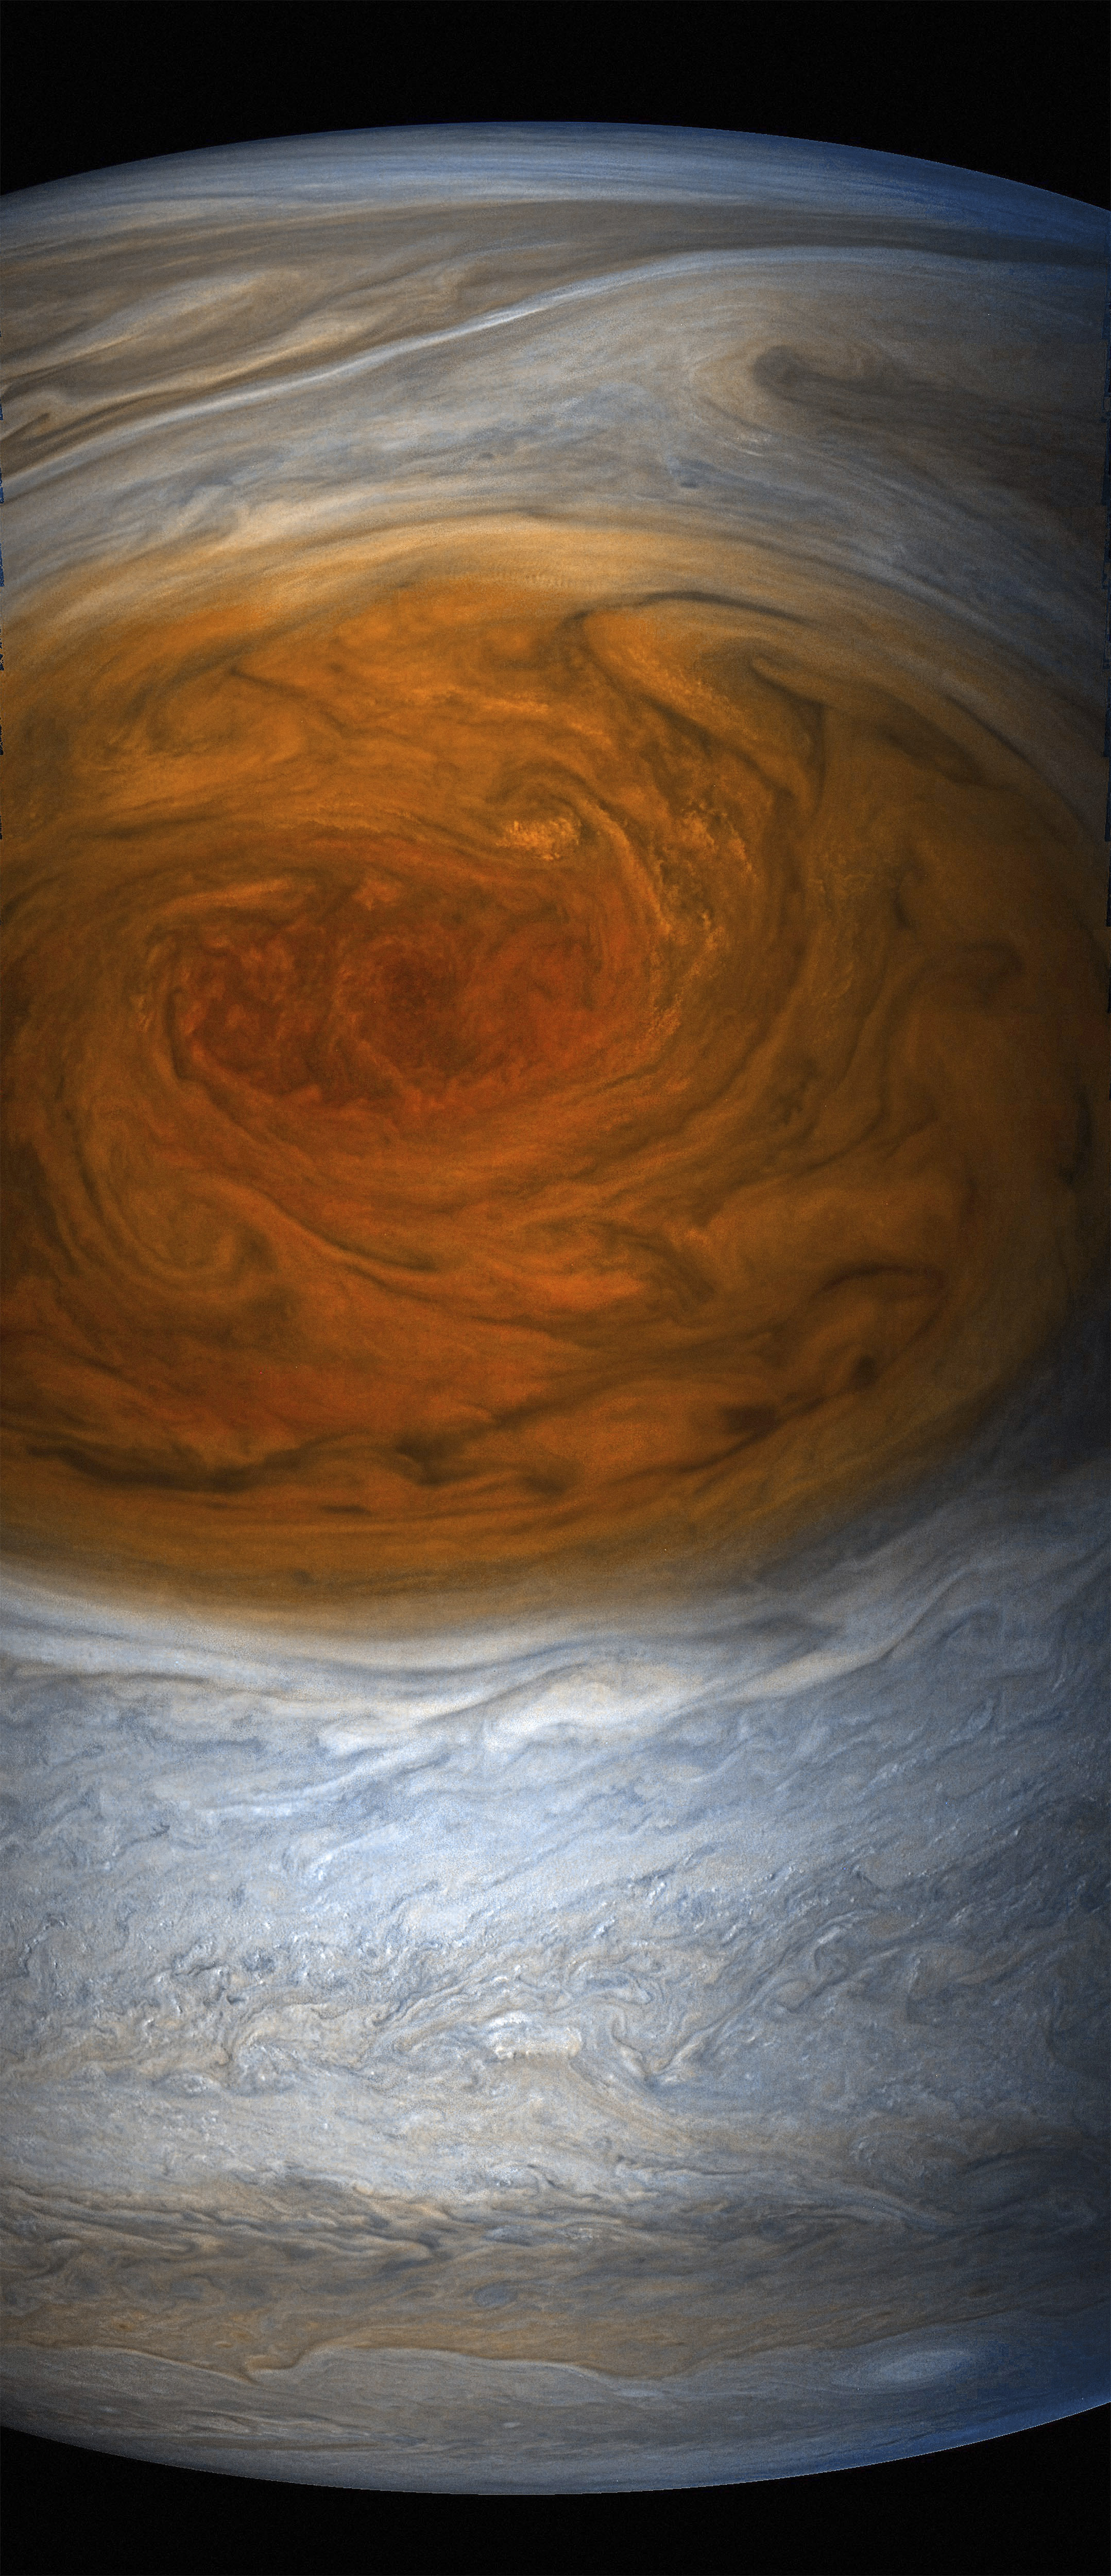 Най-близък досега поглед (от ”Джуно” на НАСА) към ”Голямото червено петно” на Юпитер